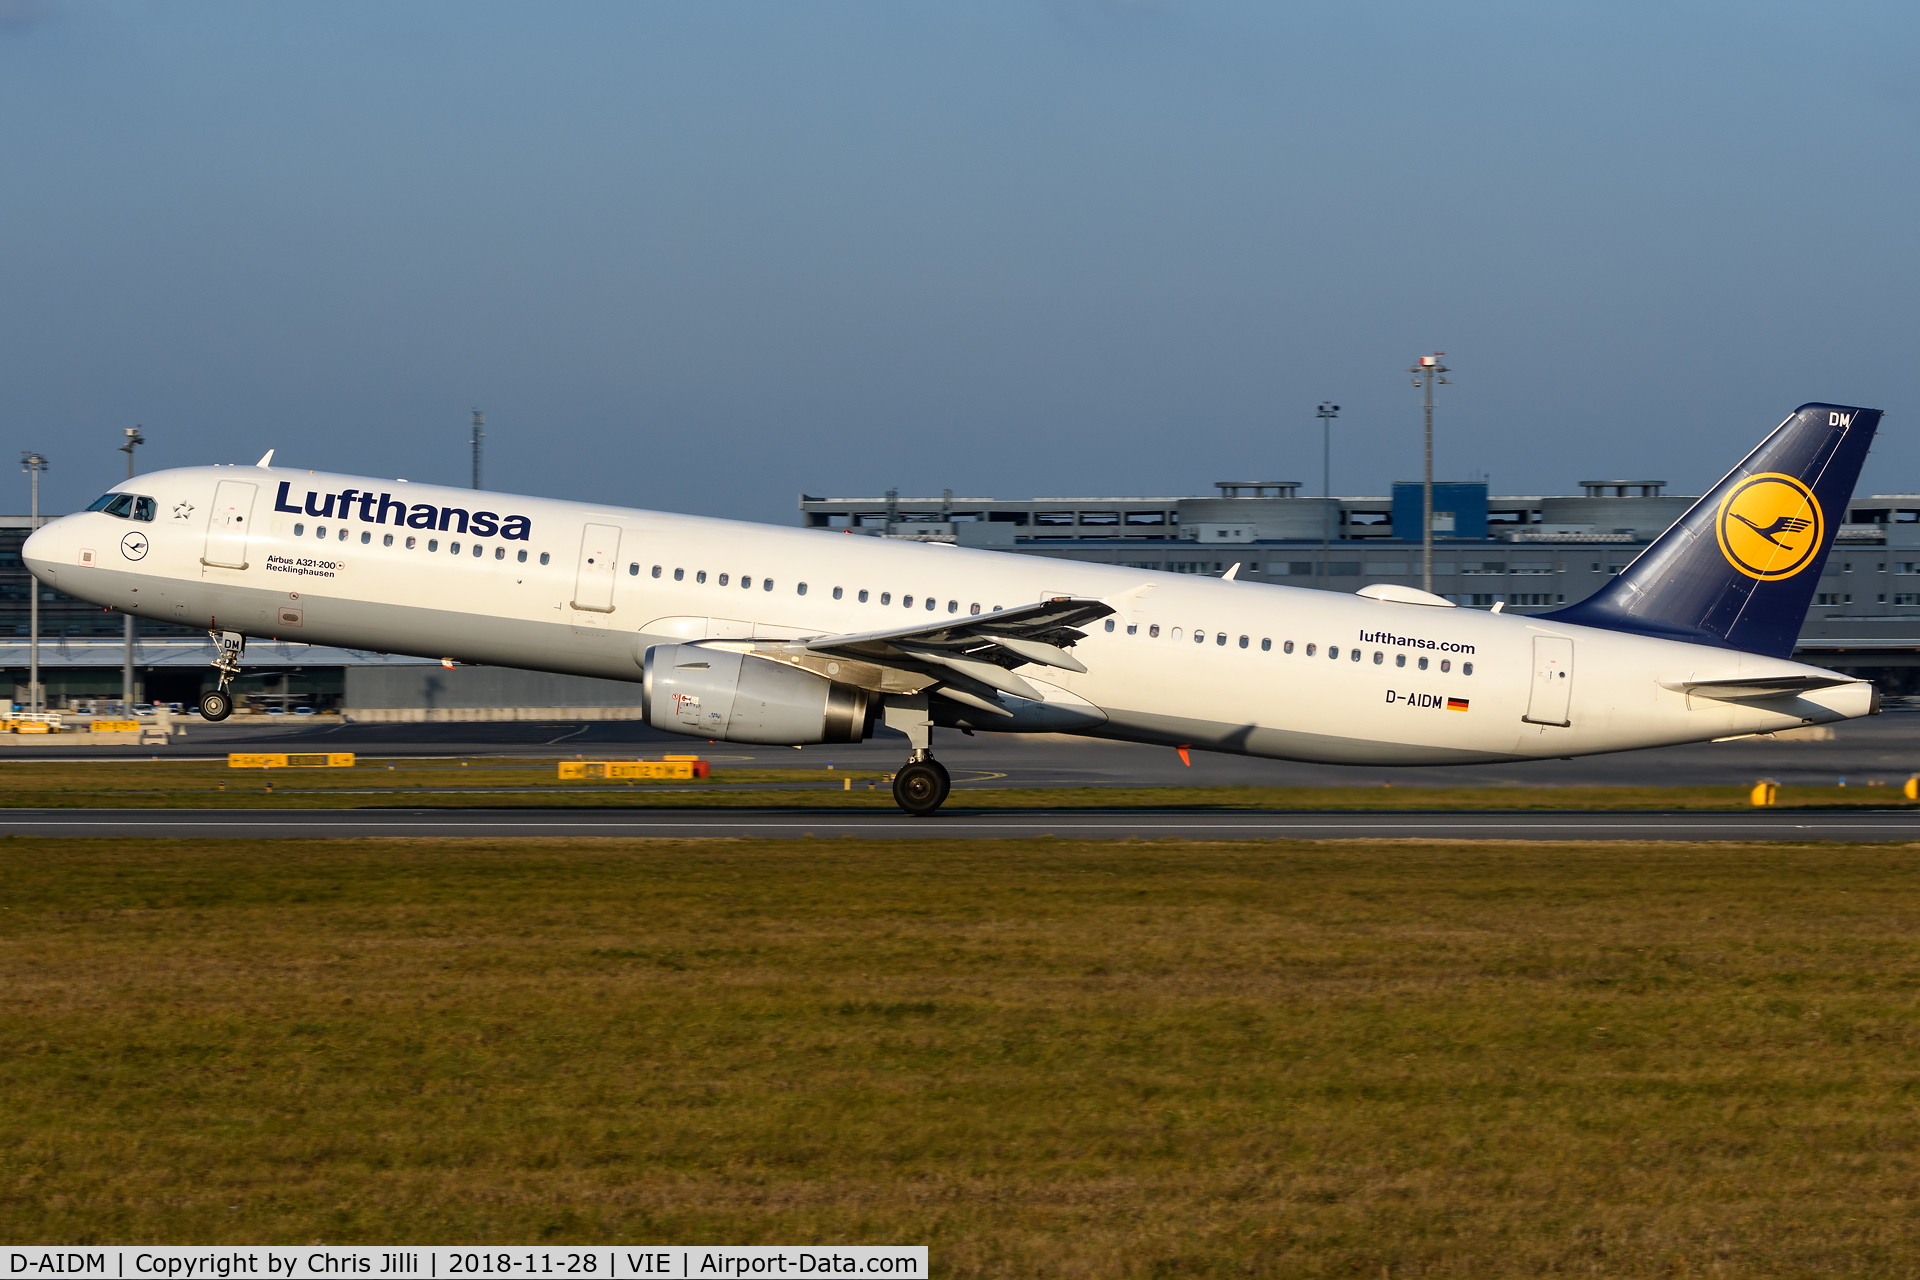 D-AIDM, 2011 Airbus A321-231 C/N 4916, Lufthansa